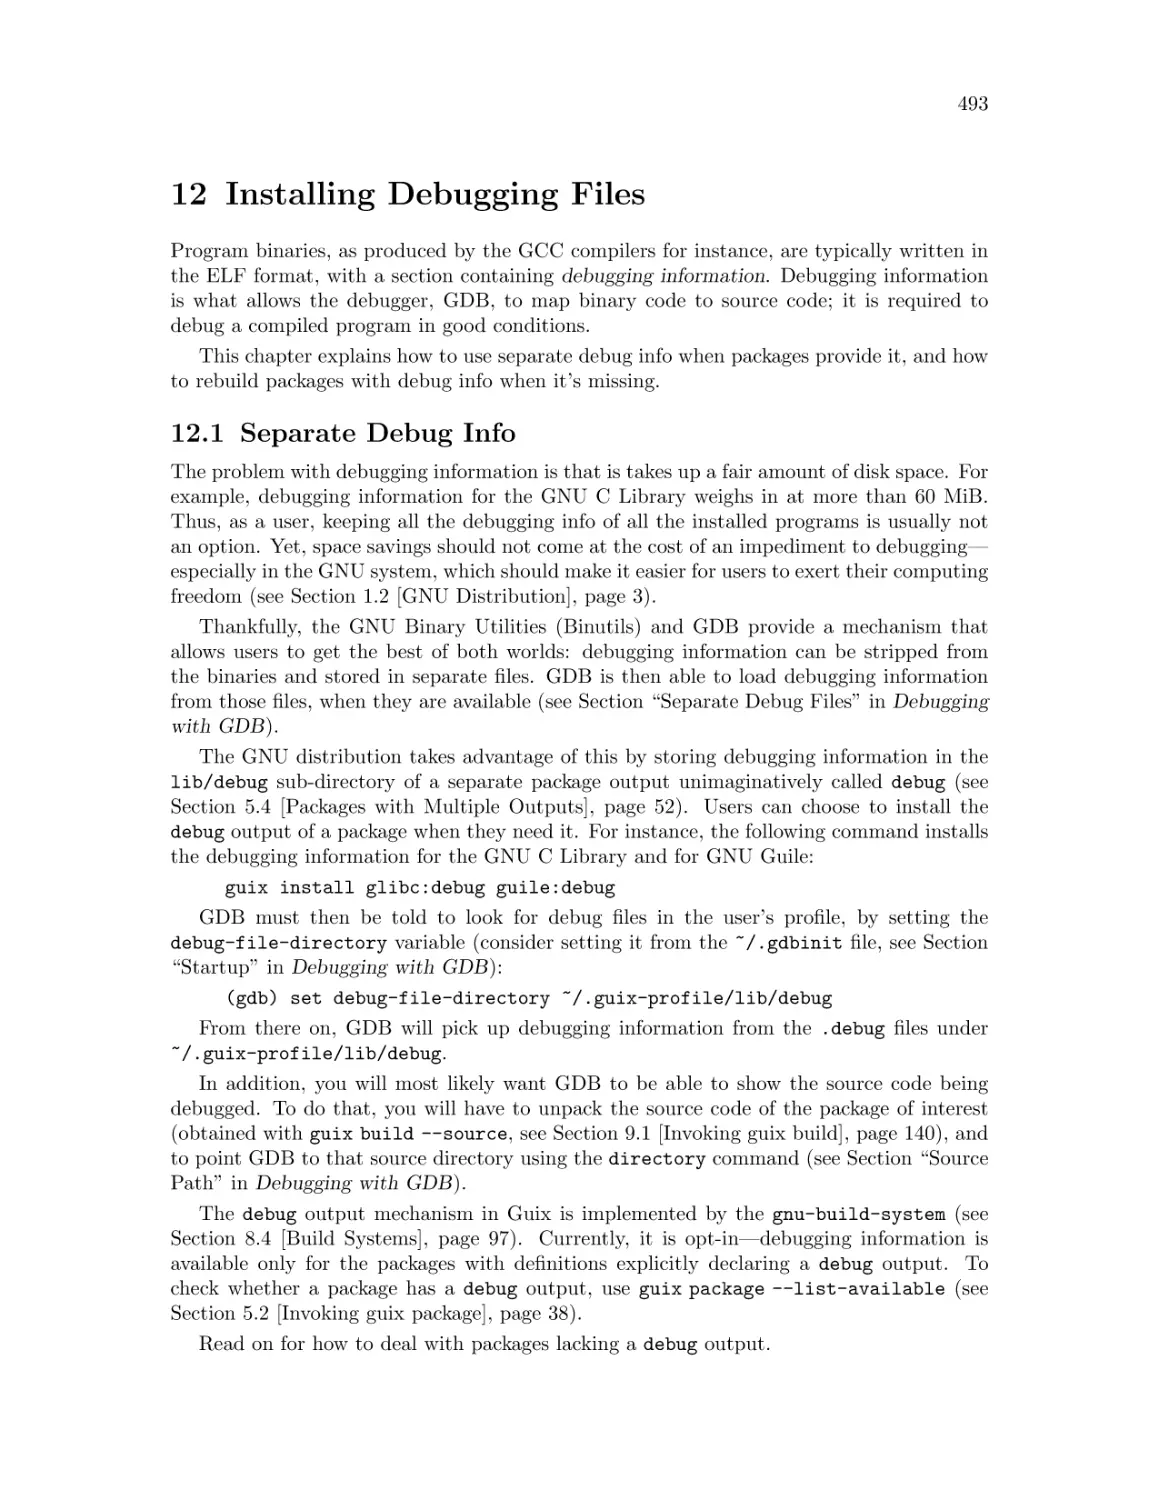 Installing Debugging Files
Separate Debug Info